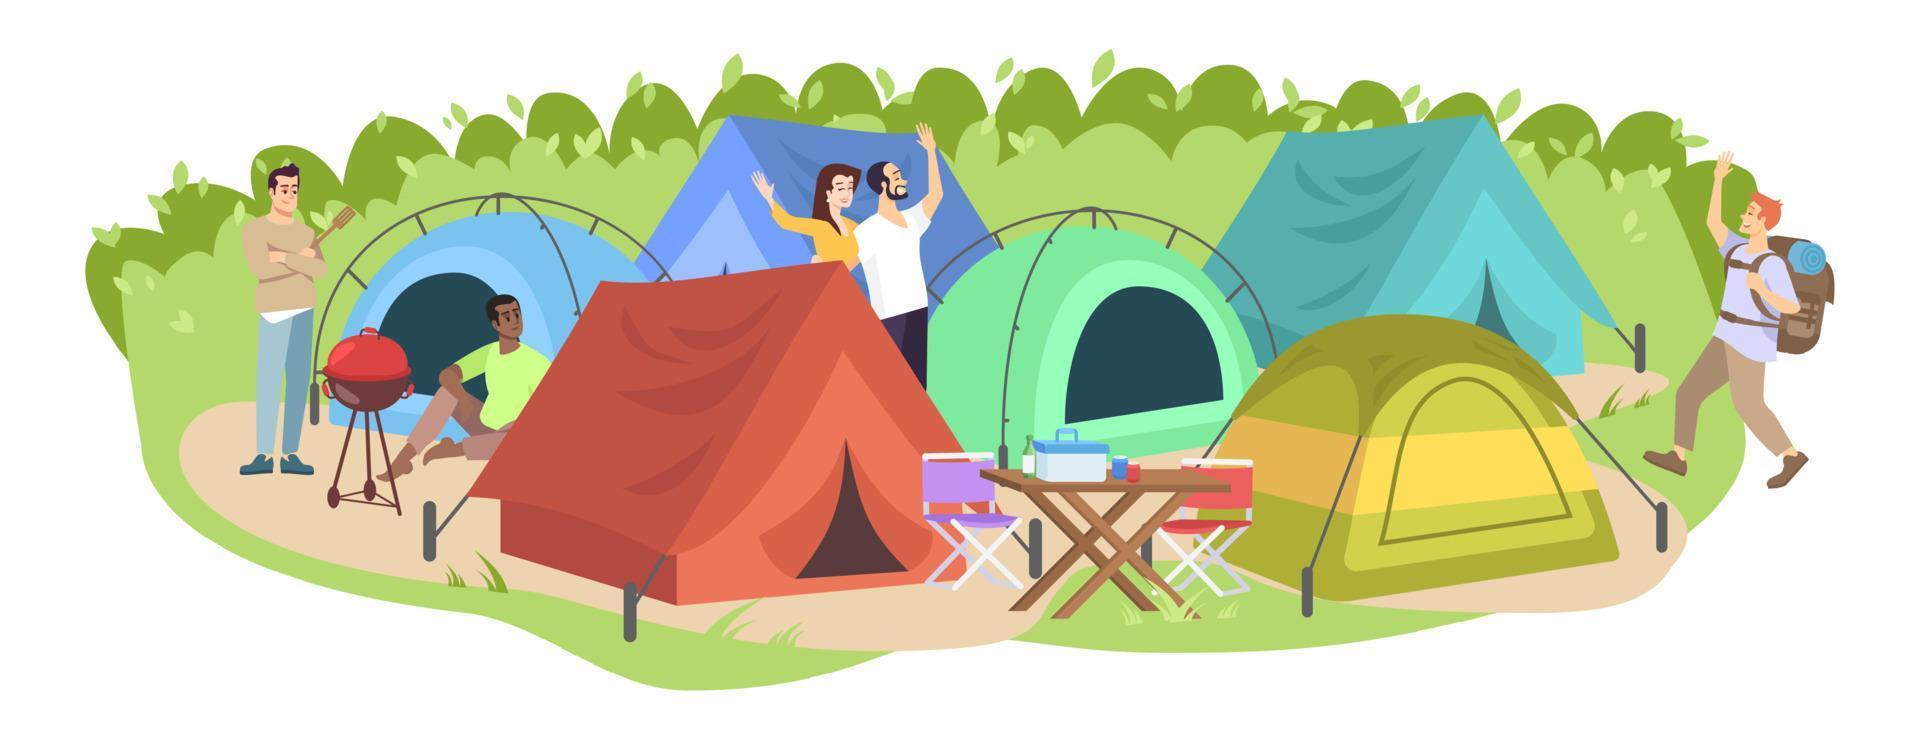 ilustración vectorial plana del festival de camping. campistas felices, personajes de dibujos animados de turistas. ocio de vacaciones de verano, picnic al aire libre de temporada. parque de tiendas, camping en el bosque aislado de fondo blanco vector